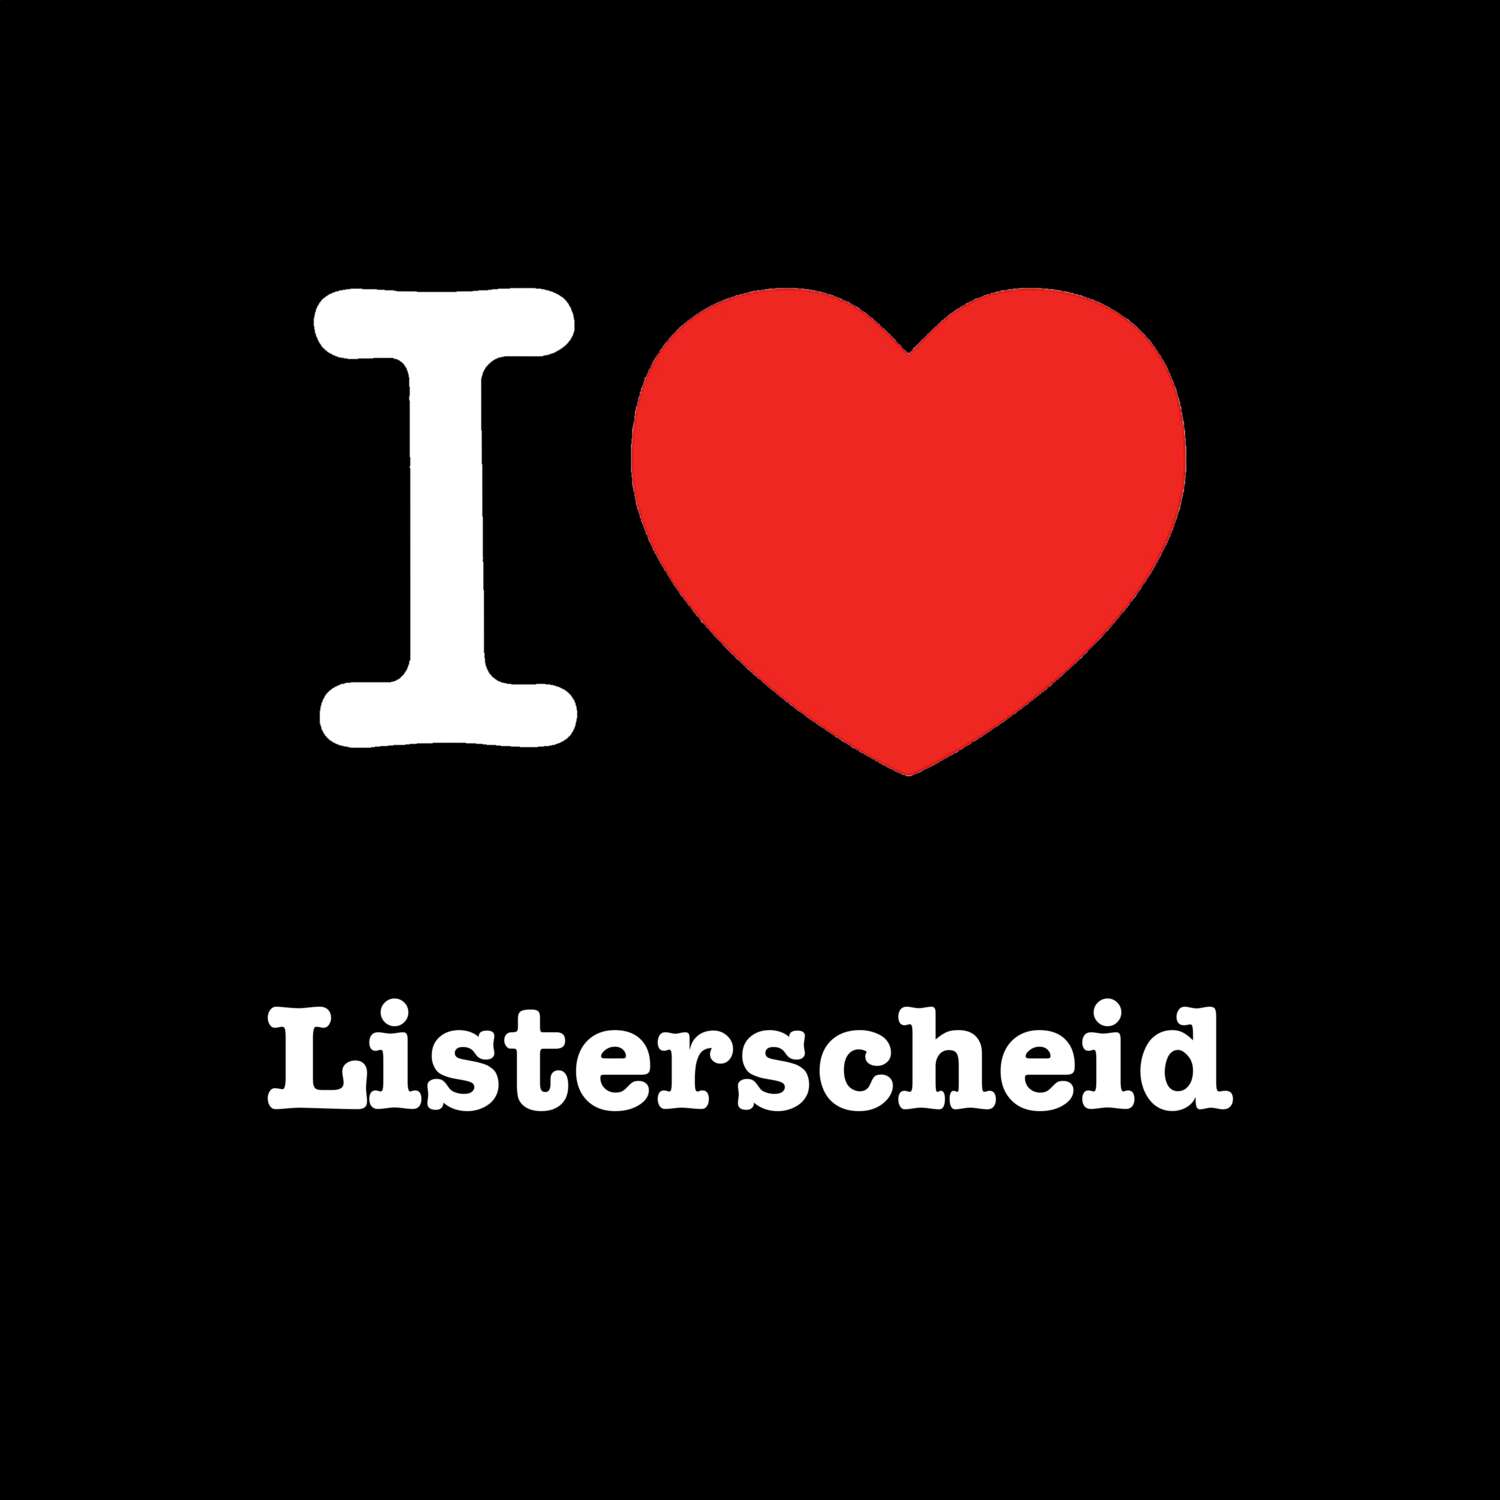 Listerscheid T-Shirt »I love«